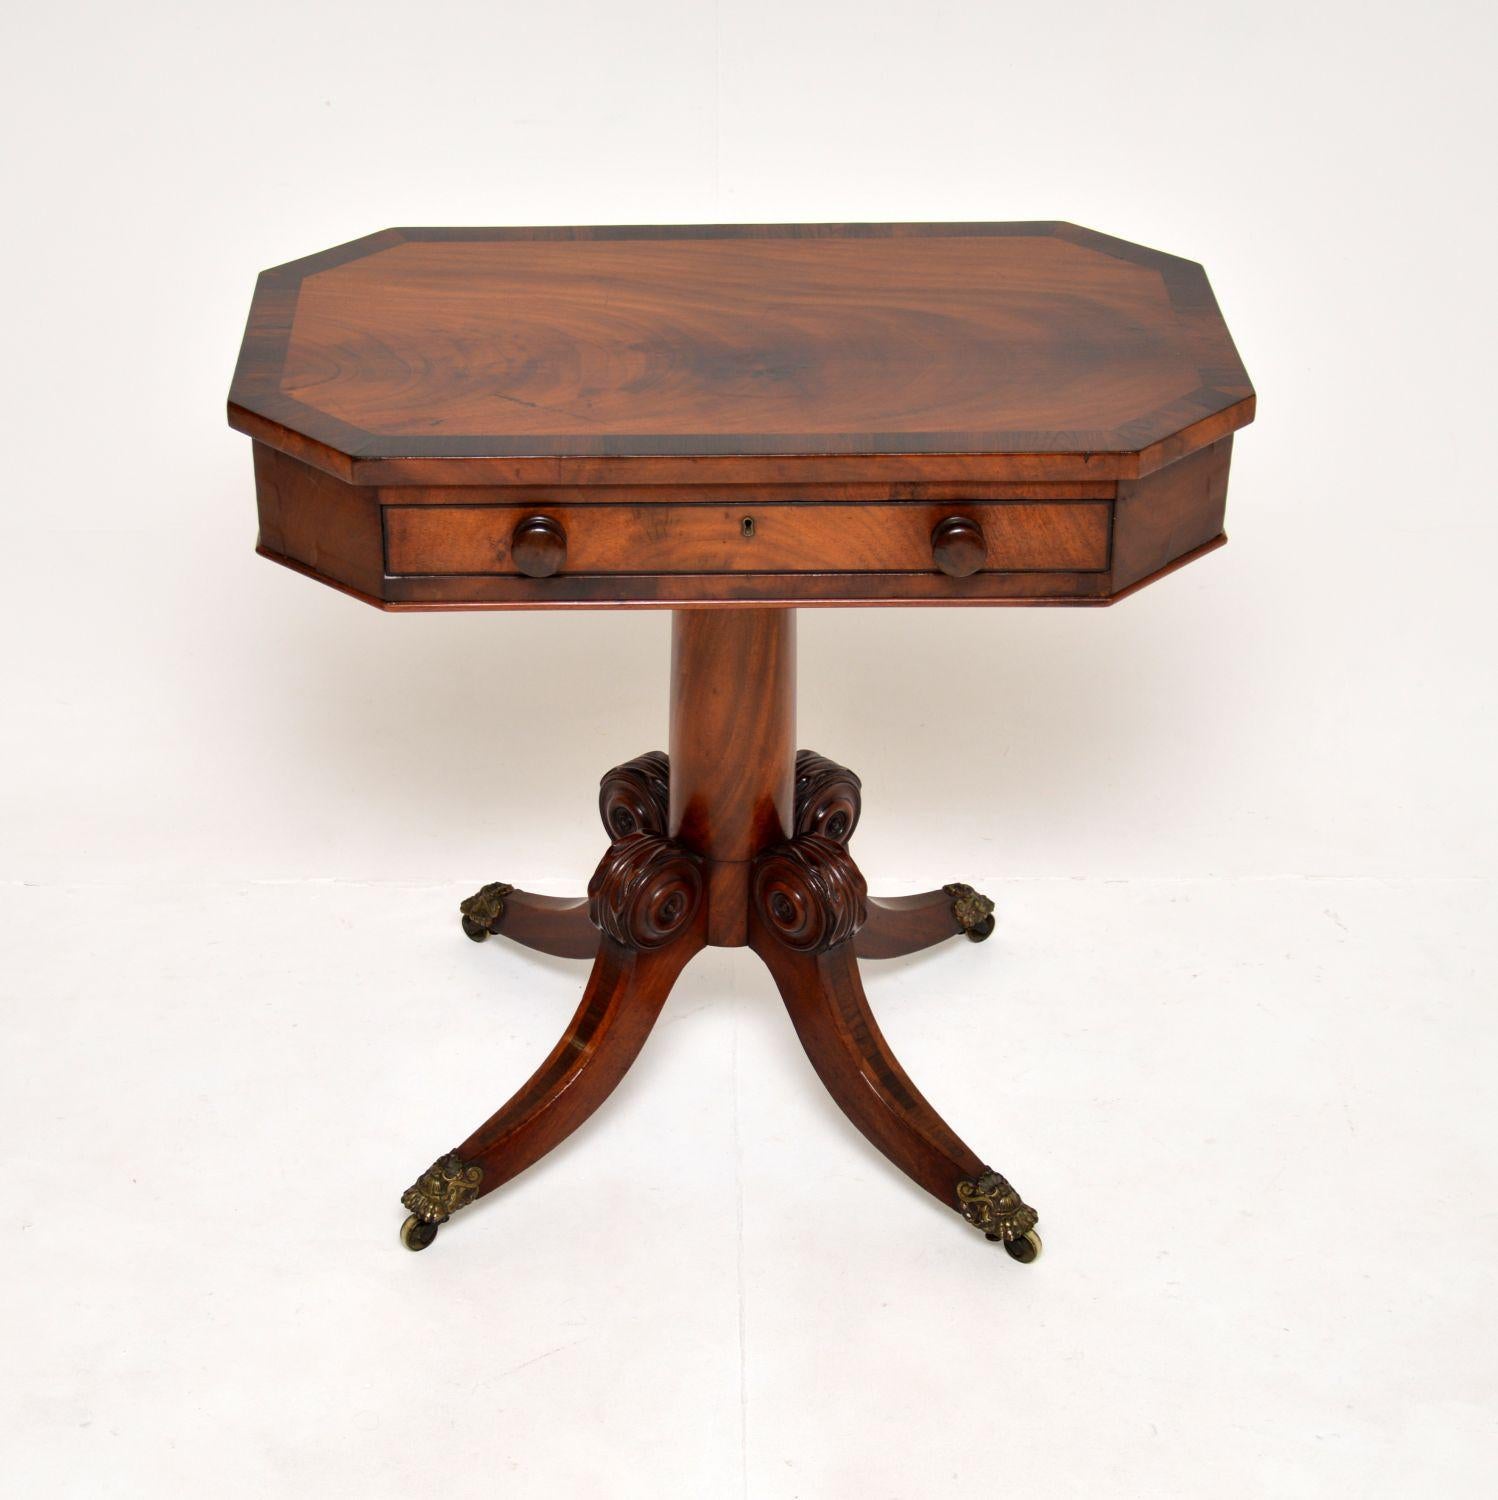 Une fantastique table d'appoint antique en marqueterie d'époque Régence. Fabriqué en Angleterre, il date d'environ 1815-1830.

Il est de superbe qualité et d'une taille très utile. Le tiroir supérieur est unique et présente des joints à queue